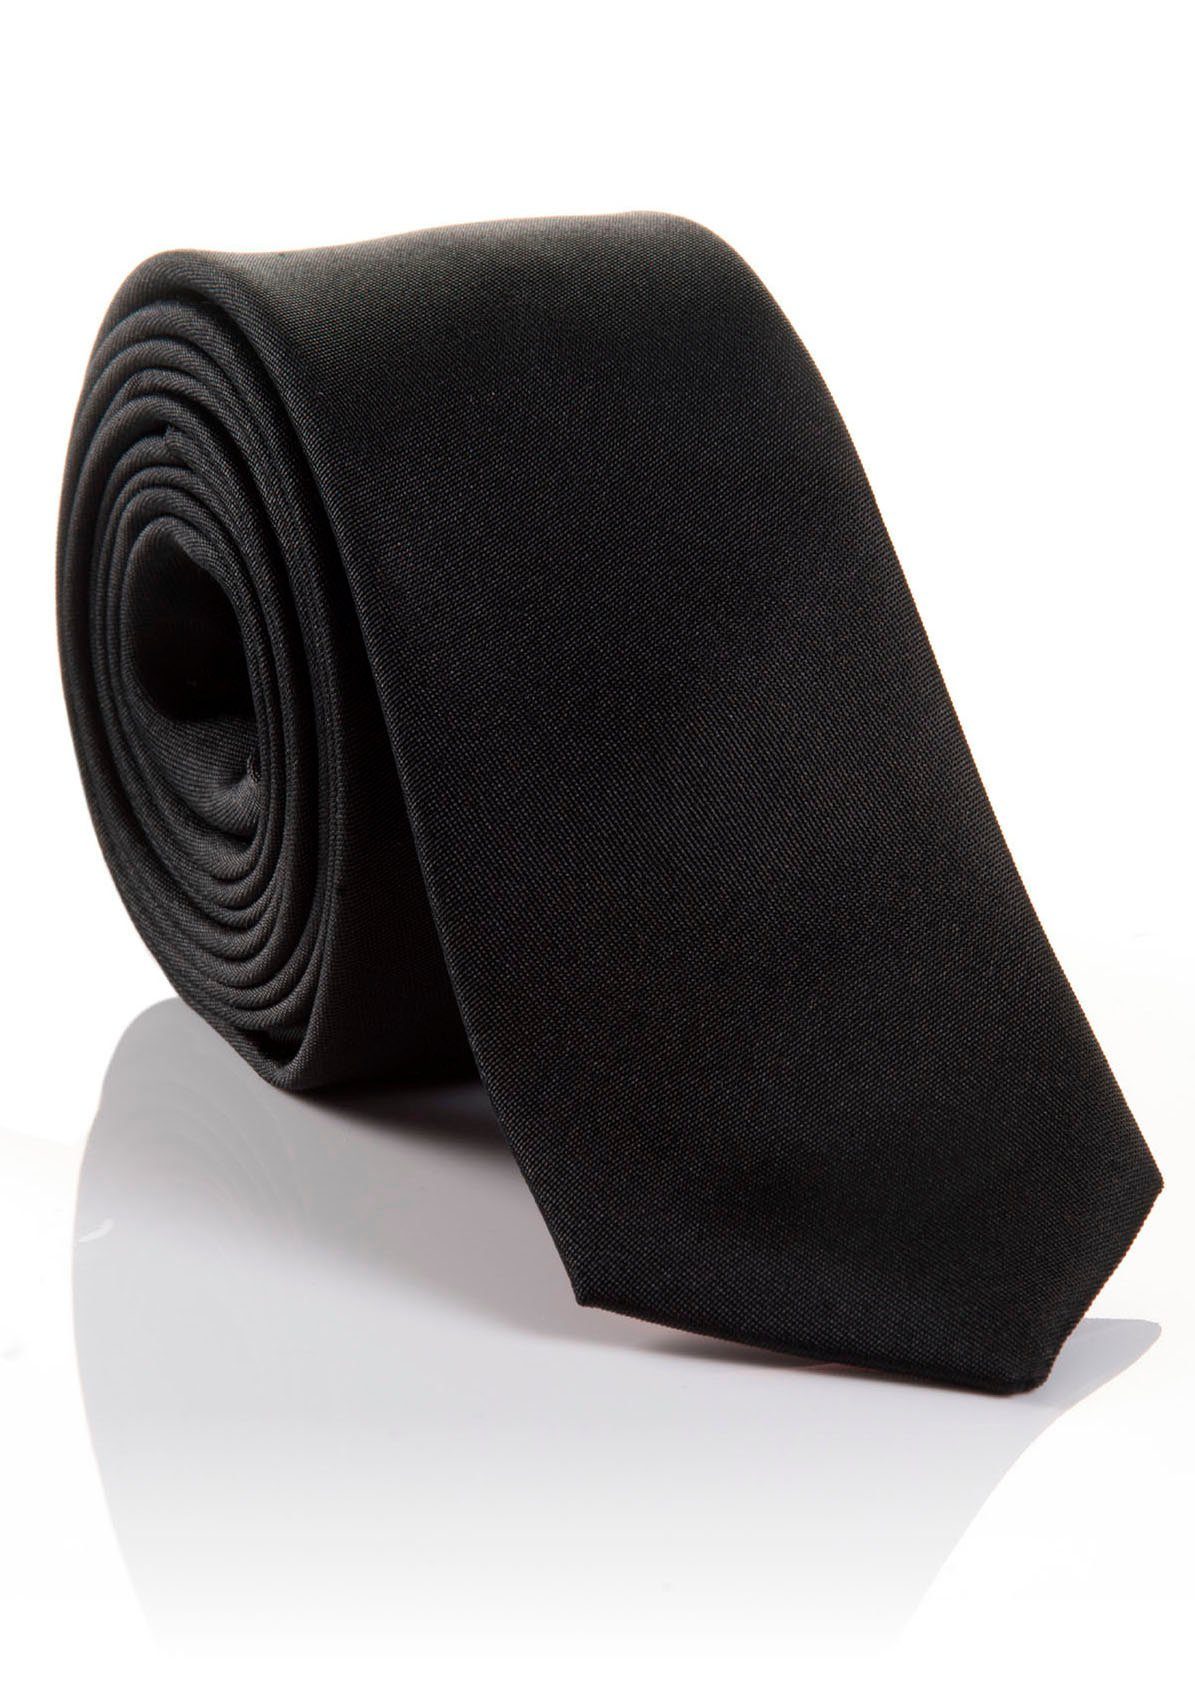 Hochwertig LORENZO MONTI Krawatte Tragekomfort hohem mit Seidenkrawatte verarbeitete